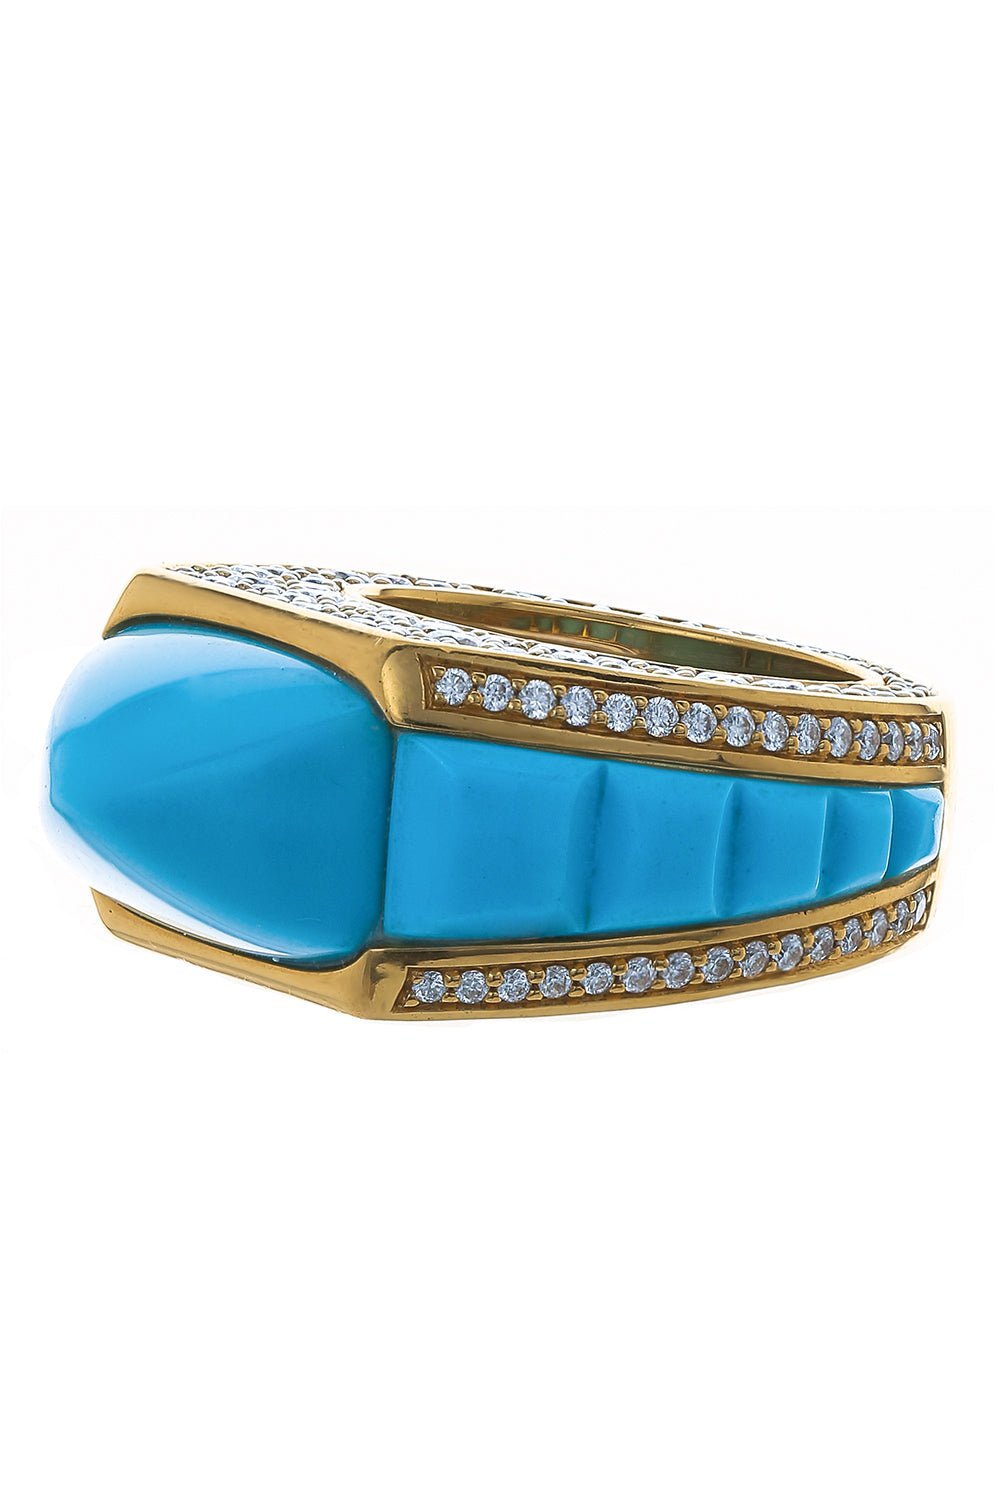 PIRANESI-Sugarloaf Turquoise Ring-YELLOW GOLD